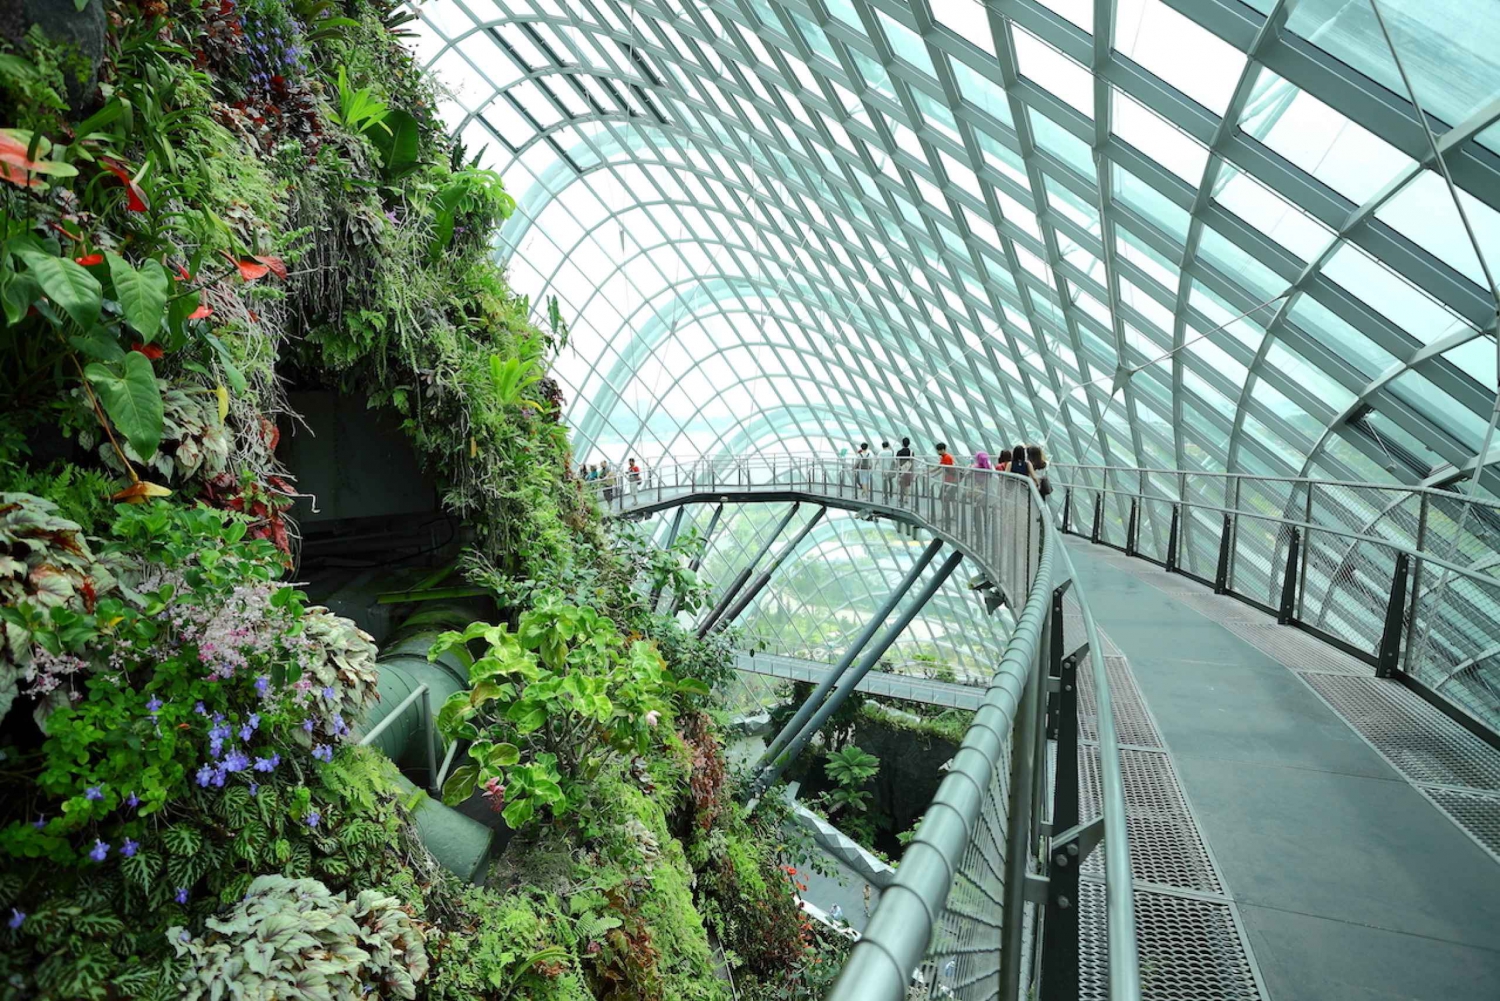 Singapore City: Gardens by the Bay and S.E.A. Aquarium